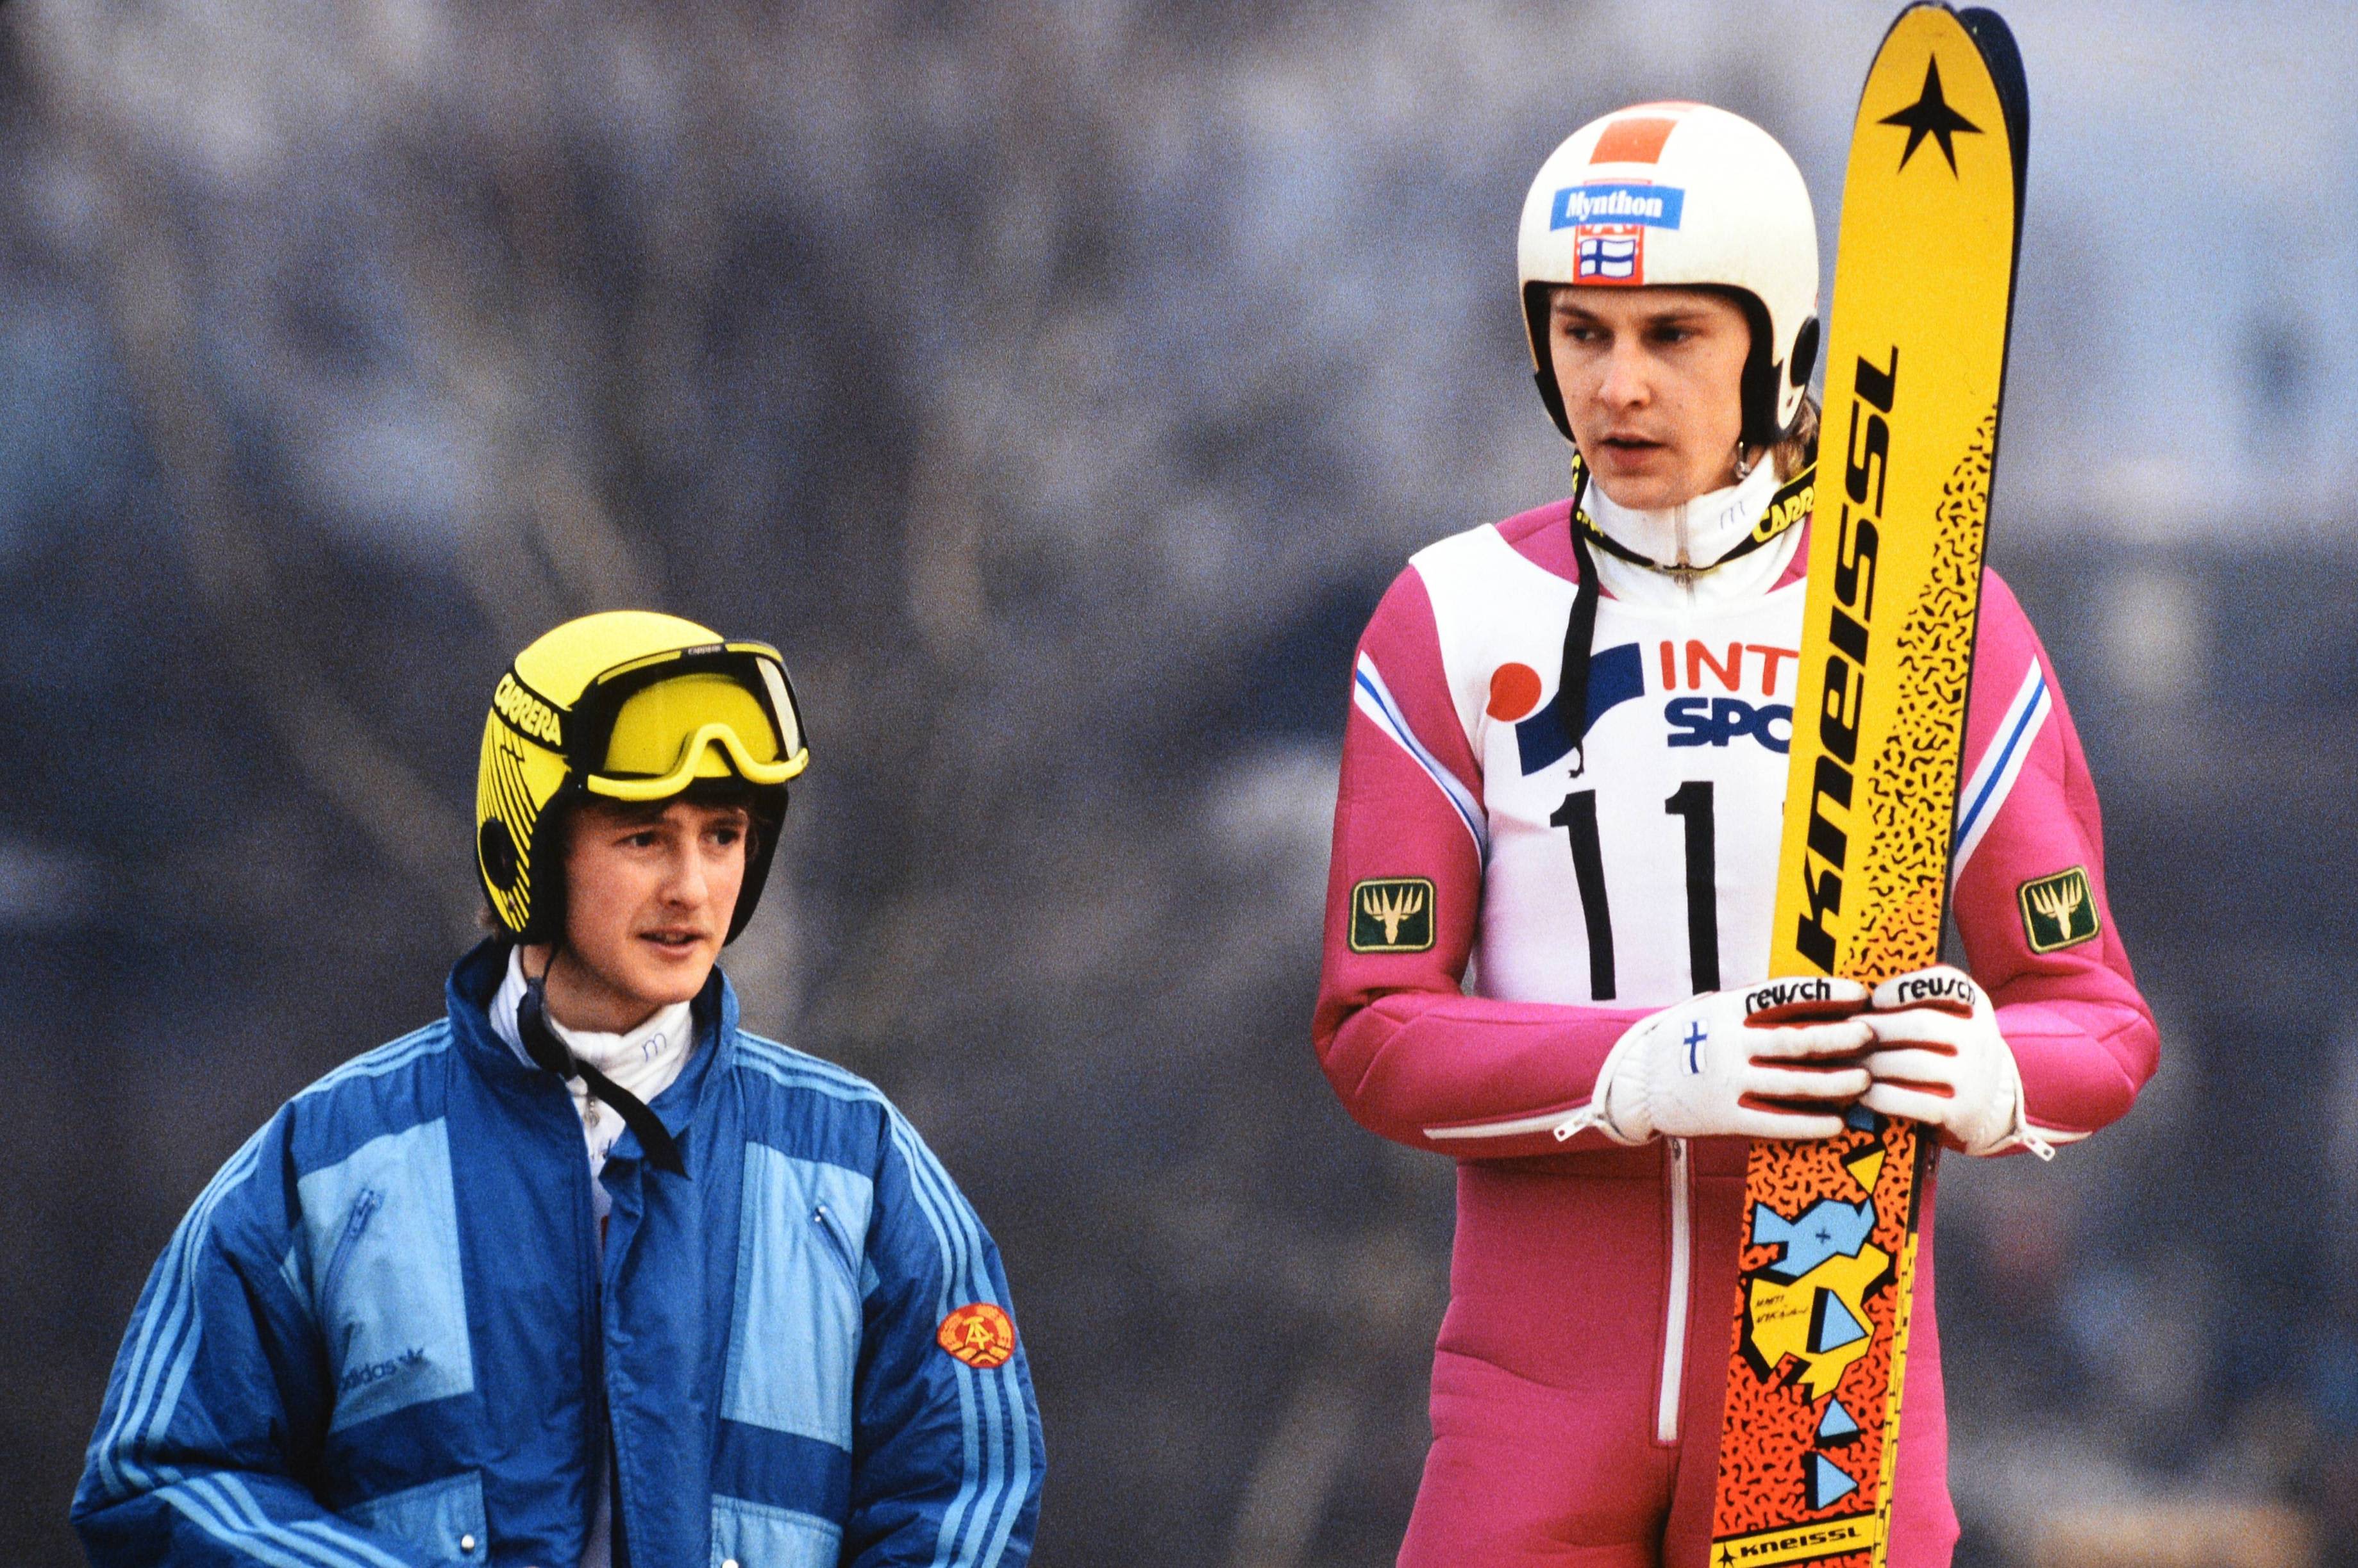 Jens Weissflog ja Matti Nykänen palkintokorokkeella Keski-Euroopan mäkiviikolla vuonna 1989.